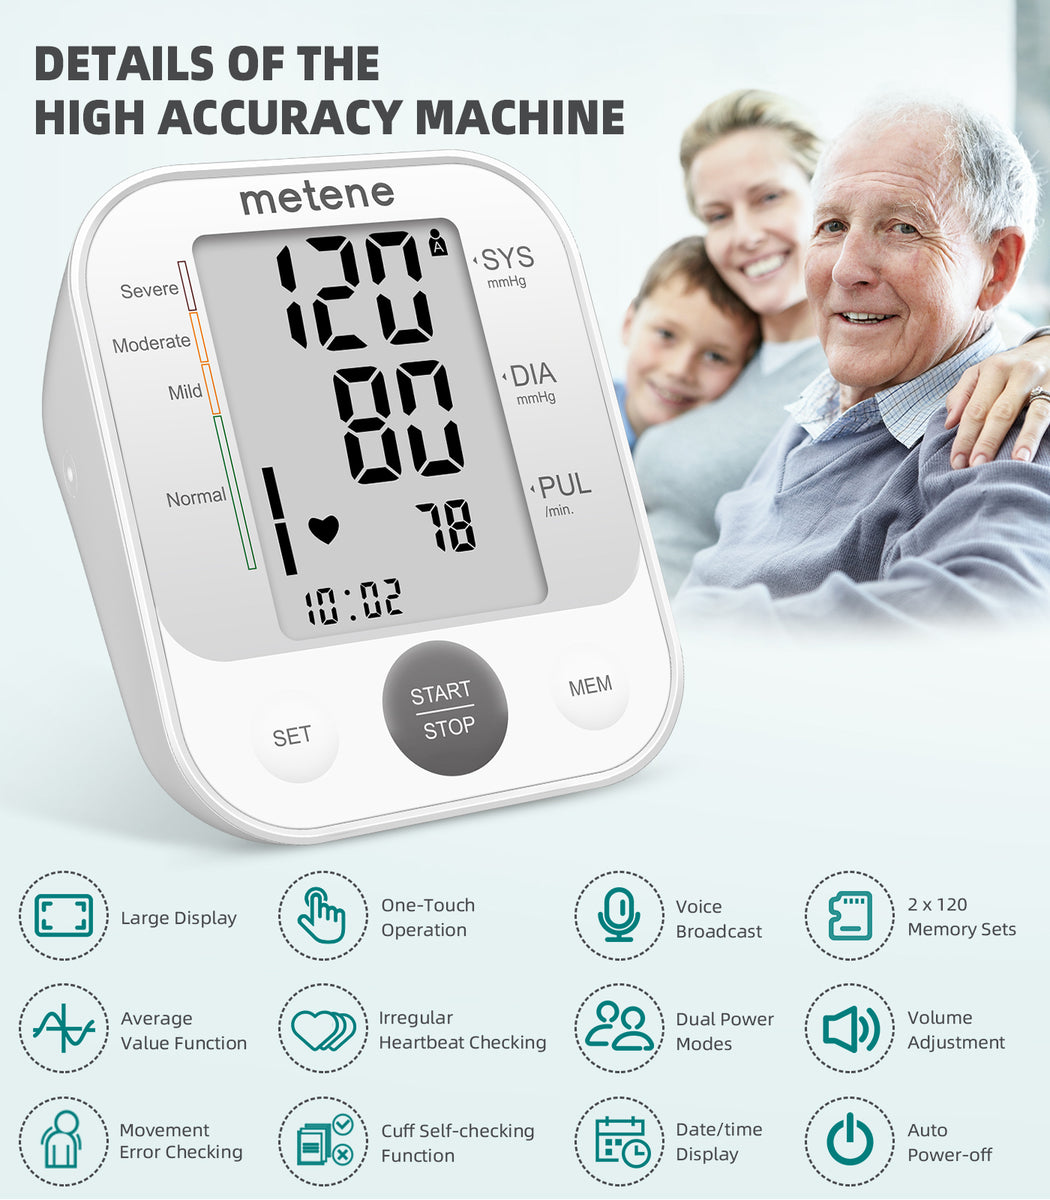 Mebak Upper Arm Blood Pressure Monitor Automatic Digital BP Machine Cuffs  B56